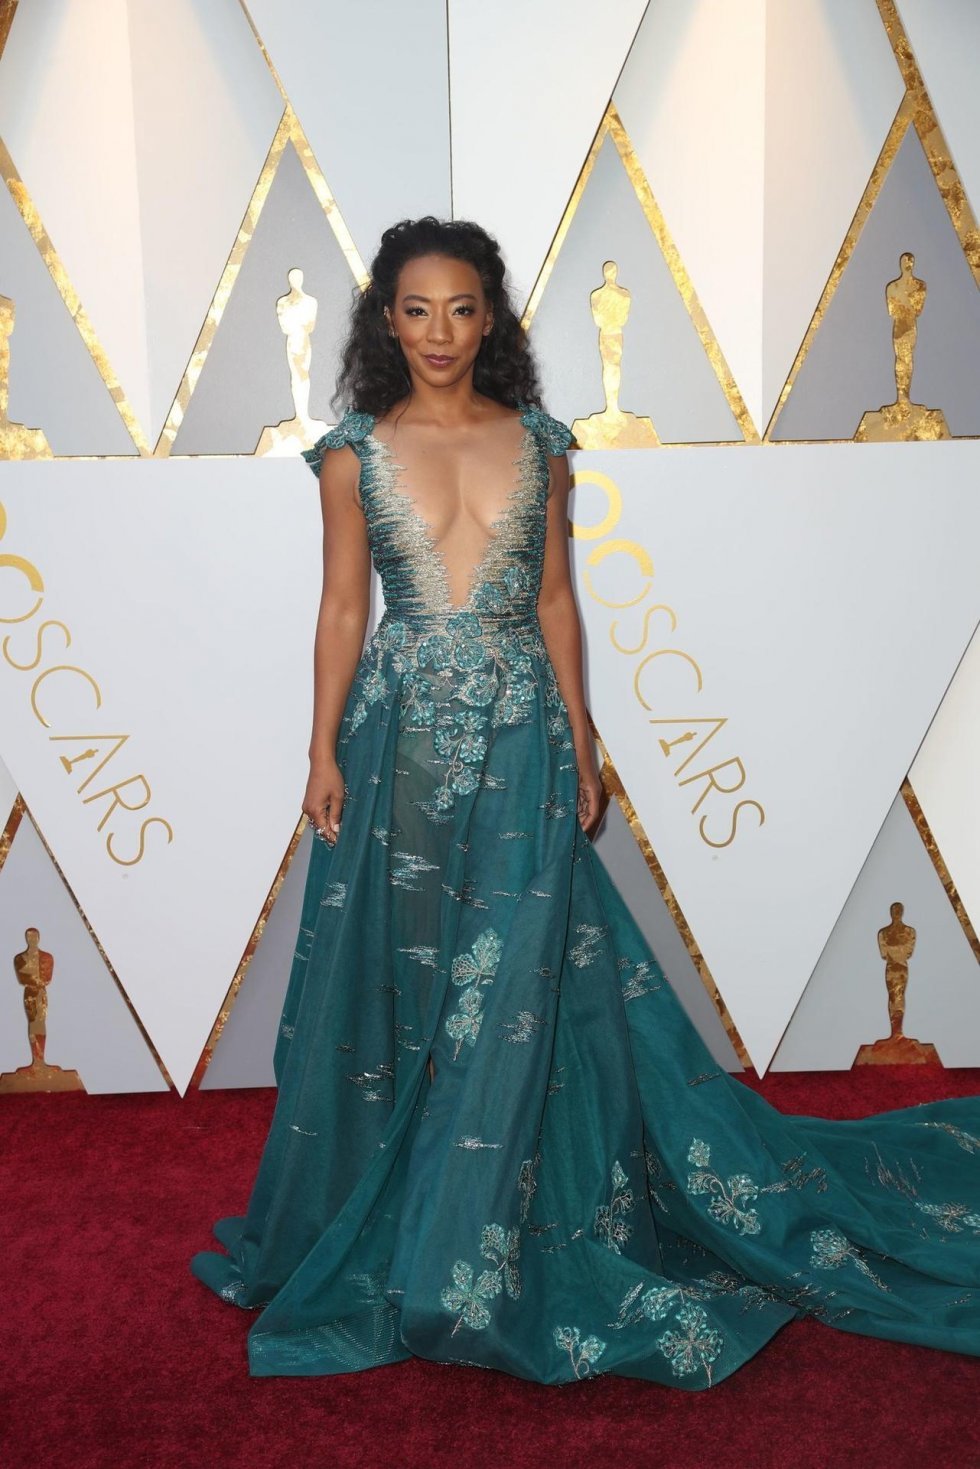 The New York Times - Oscars Red Carpet Fashion: Hvilken stjerne bar hvad?